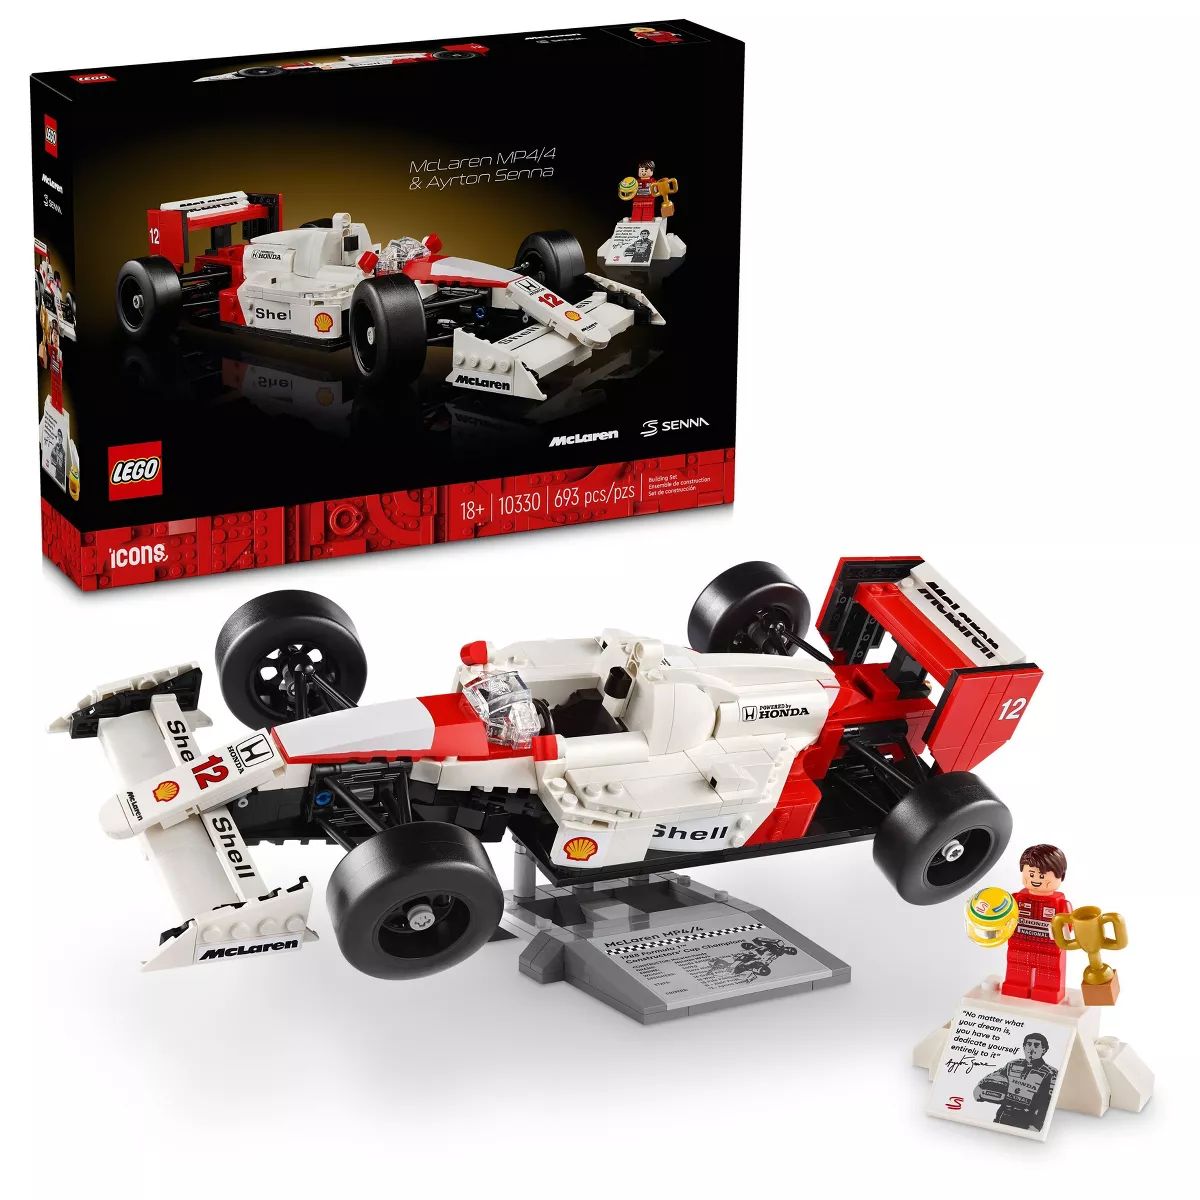 LEGO Icons McLaren MP4/4 & Ayrton Senna Model Race Car 10330 | Target